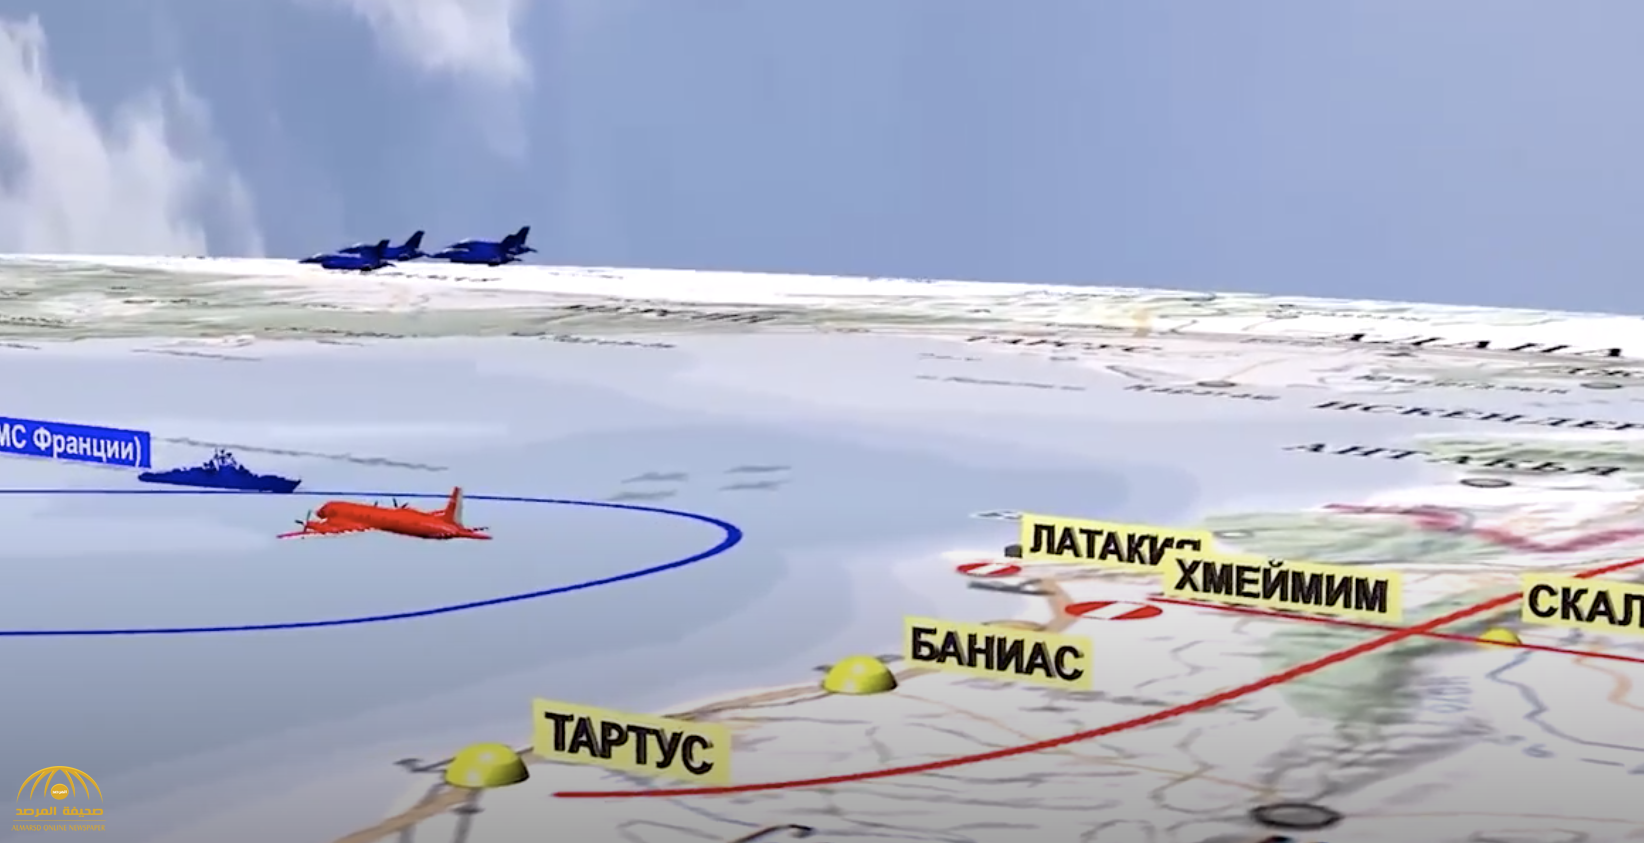 شاهد :  فيديو جديد يوضح لحظة إسقاط الطائرة العسكرية إيل-20" الروسية